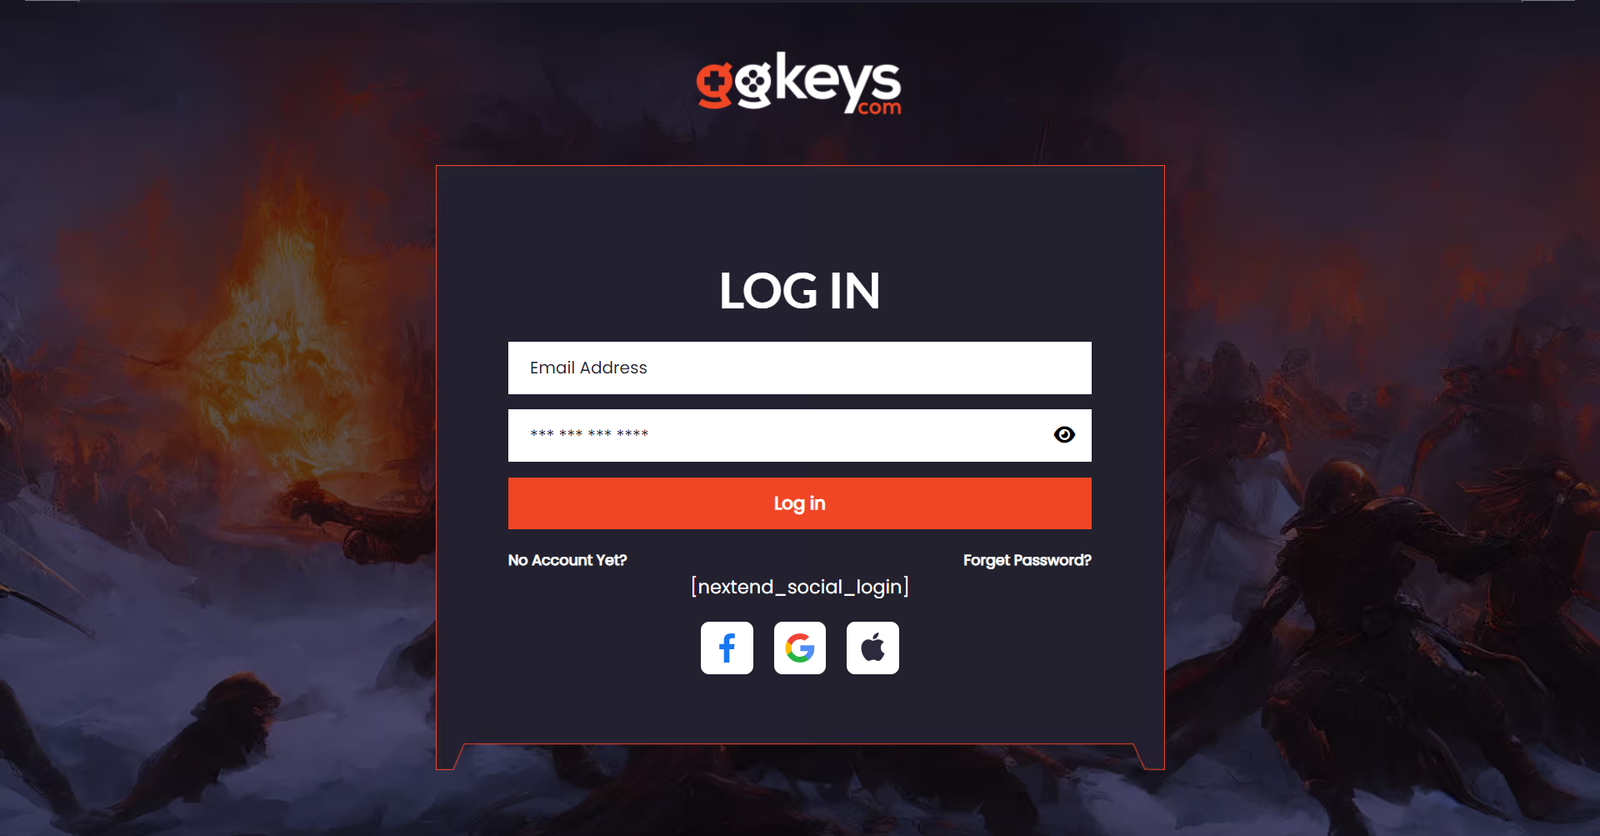 ggkeys website screenshot 5 (2)